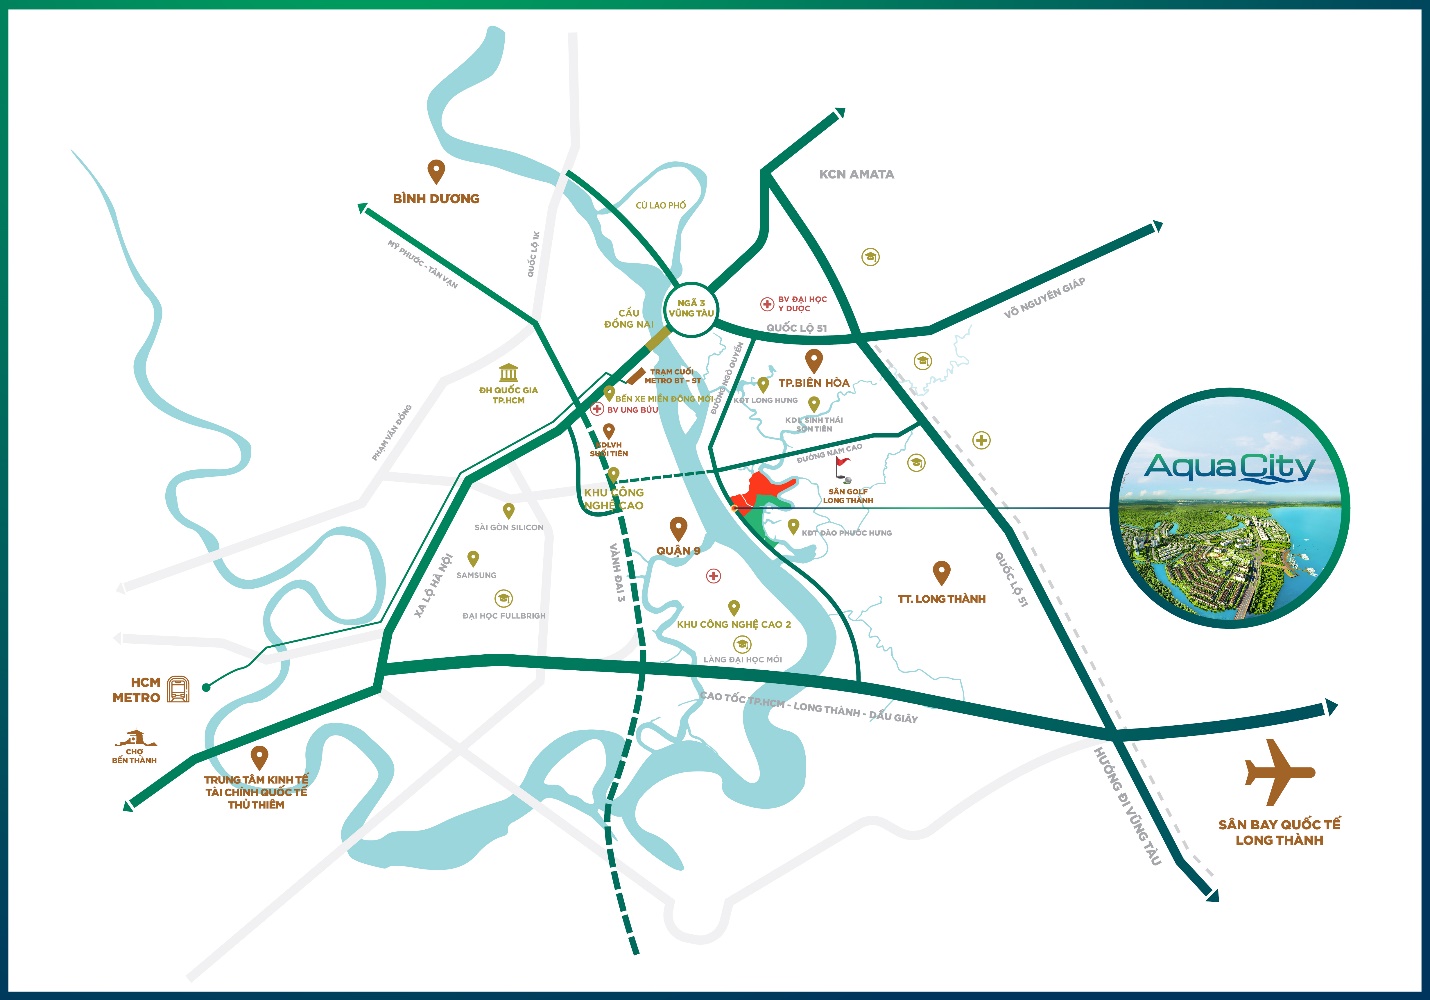 Aqua City nằm ở tâm điểm kết nối giao thông đến TP.HCM và các vùng lân cận